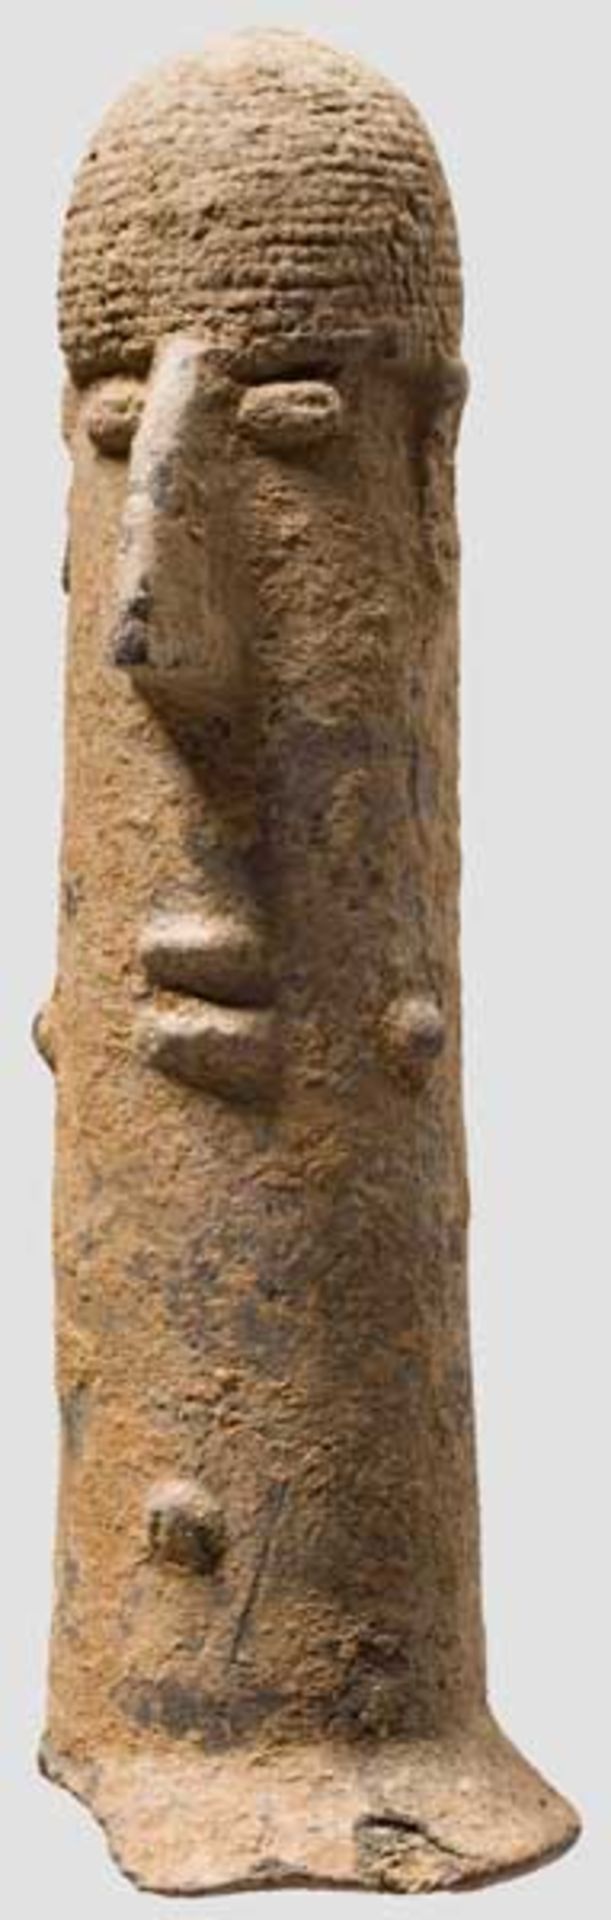 Tonstele, altafrikanisch, 500 v. - 500 n. Chr. Hohle, zylindrische Tonsäule, die an der Basis